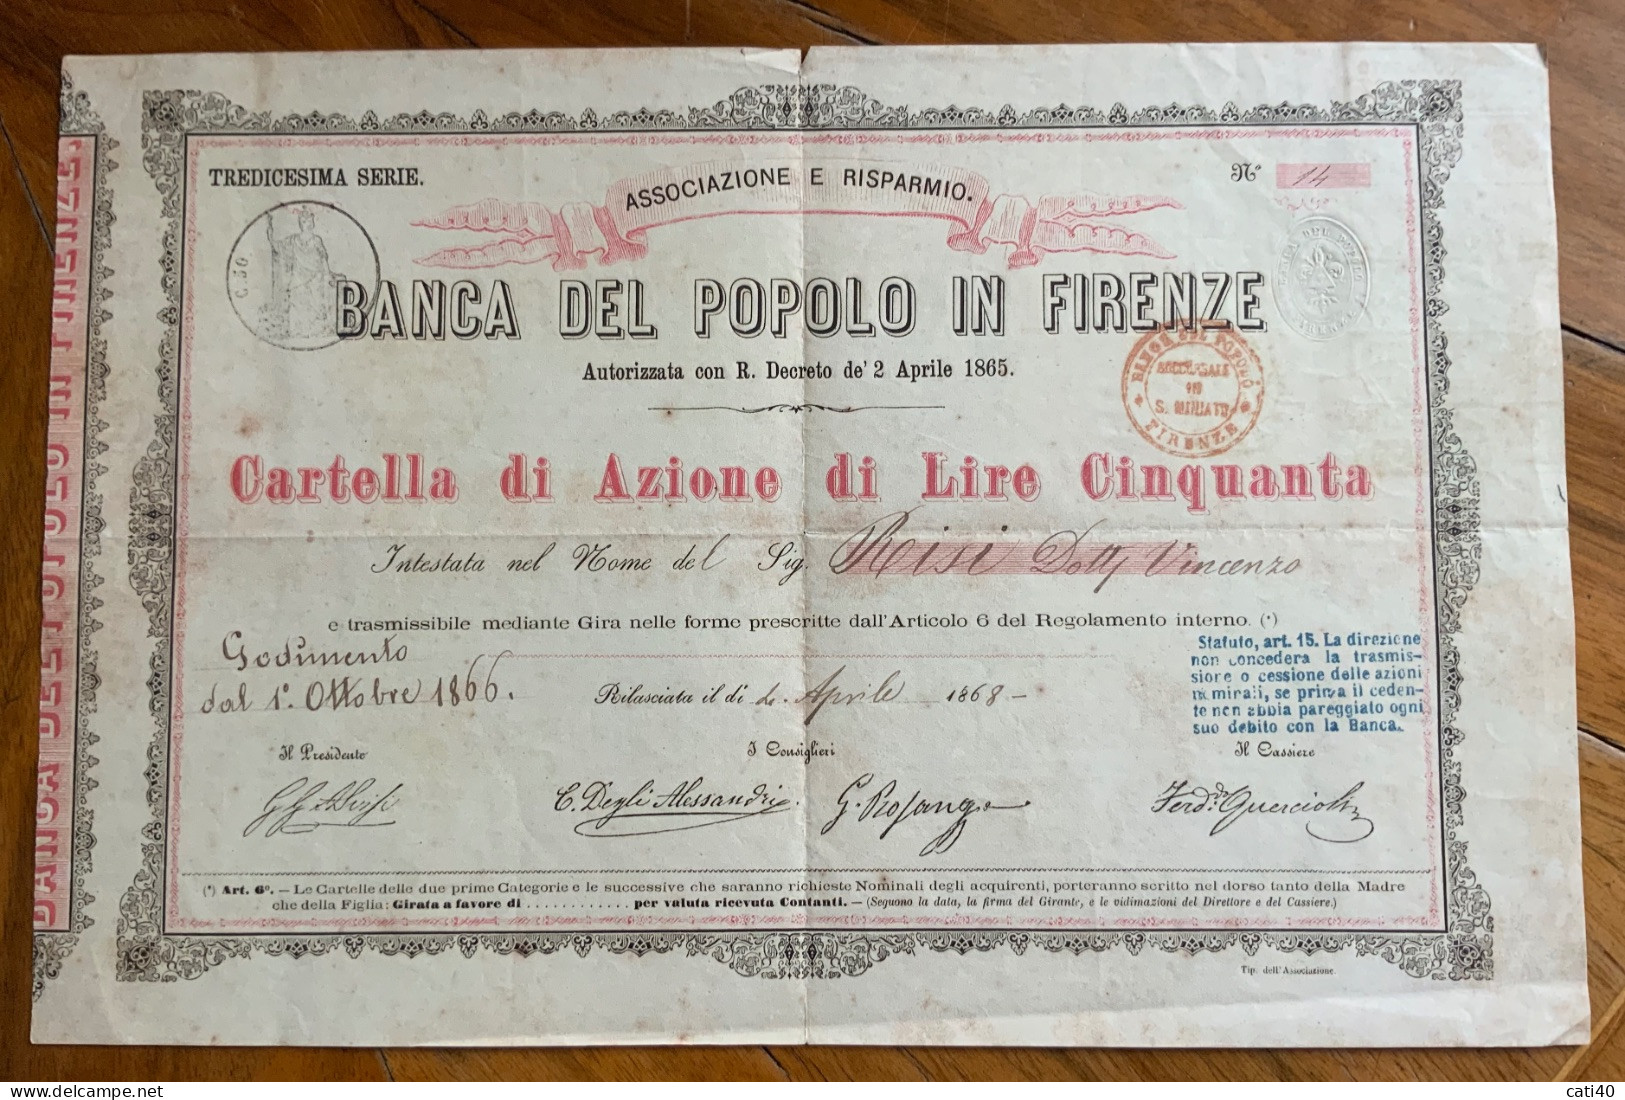 BANCA DEL POPOLO IN FIRENZE - CARTELLA DI AZIONE DA LIRE CINQUANTA - 1866  - TREDICESIMA SERIE - Transports